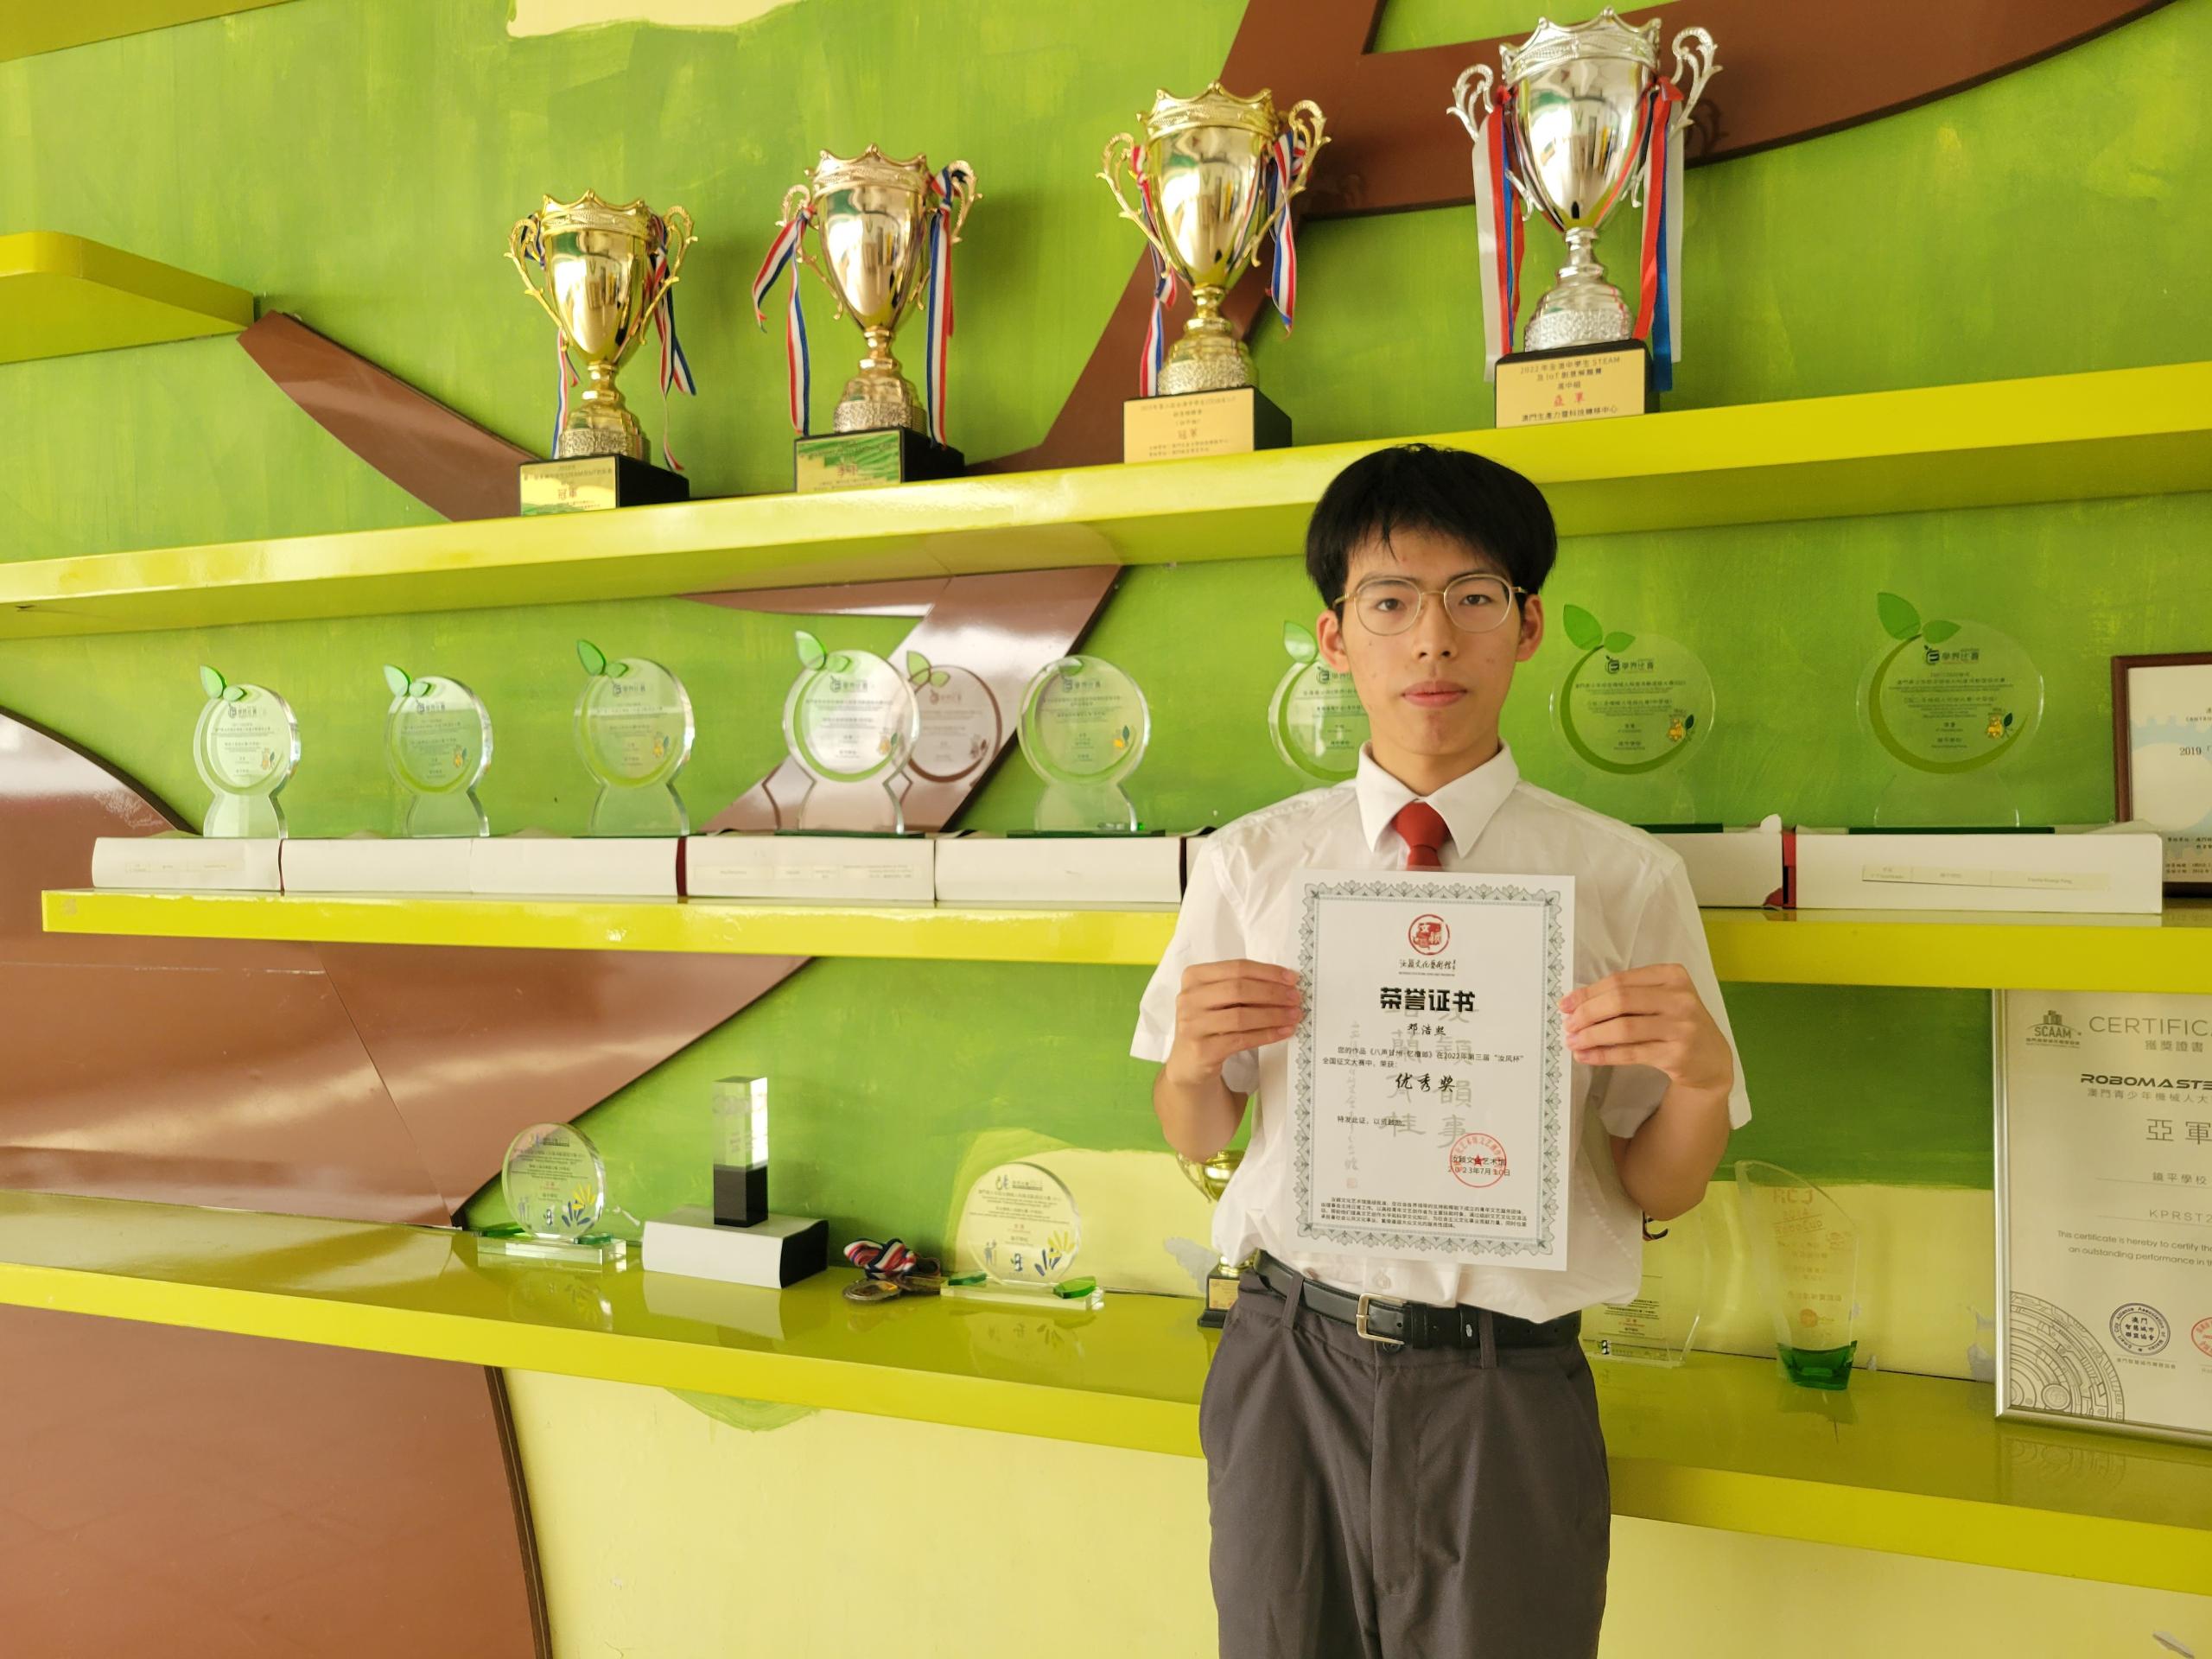 高一F班鄧浩熙獲得第三屆汝風杯全國徵文大賽優秀獎